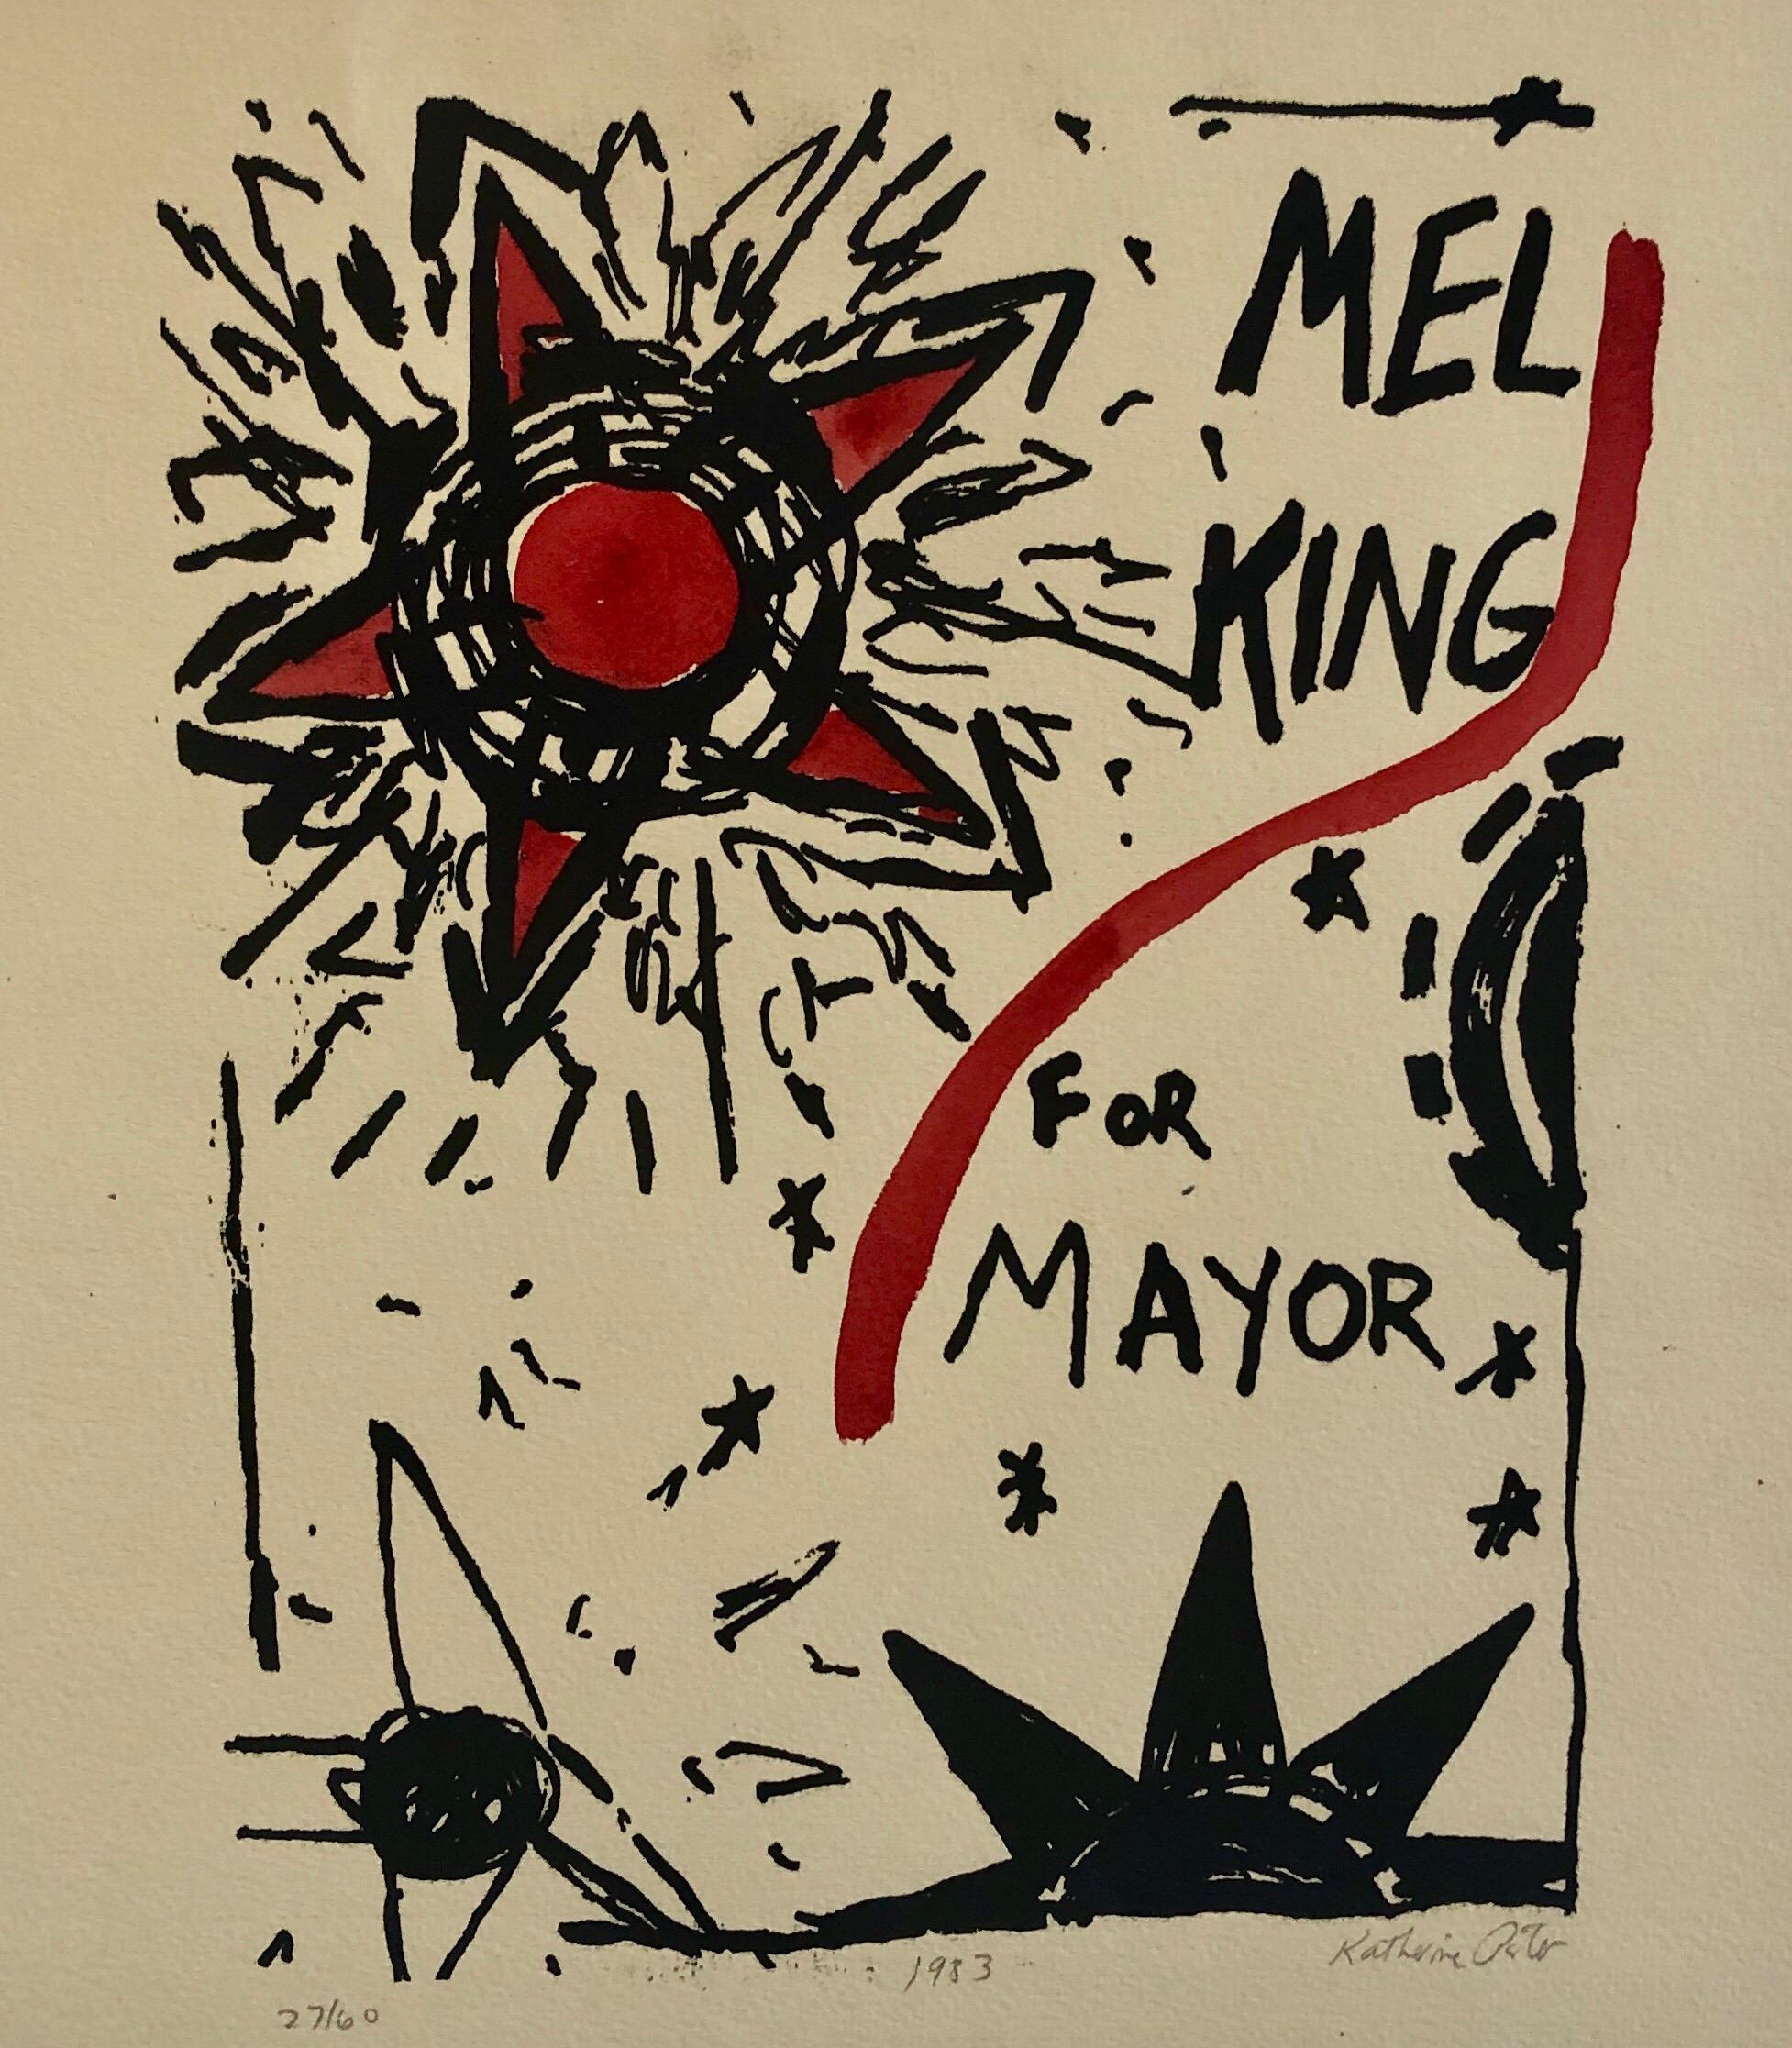 Abstrakt-expressionistisches Aquarellgemälde, Holzschnitt, Politisches Poster, Mel King 